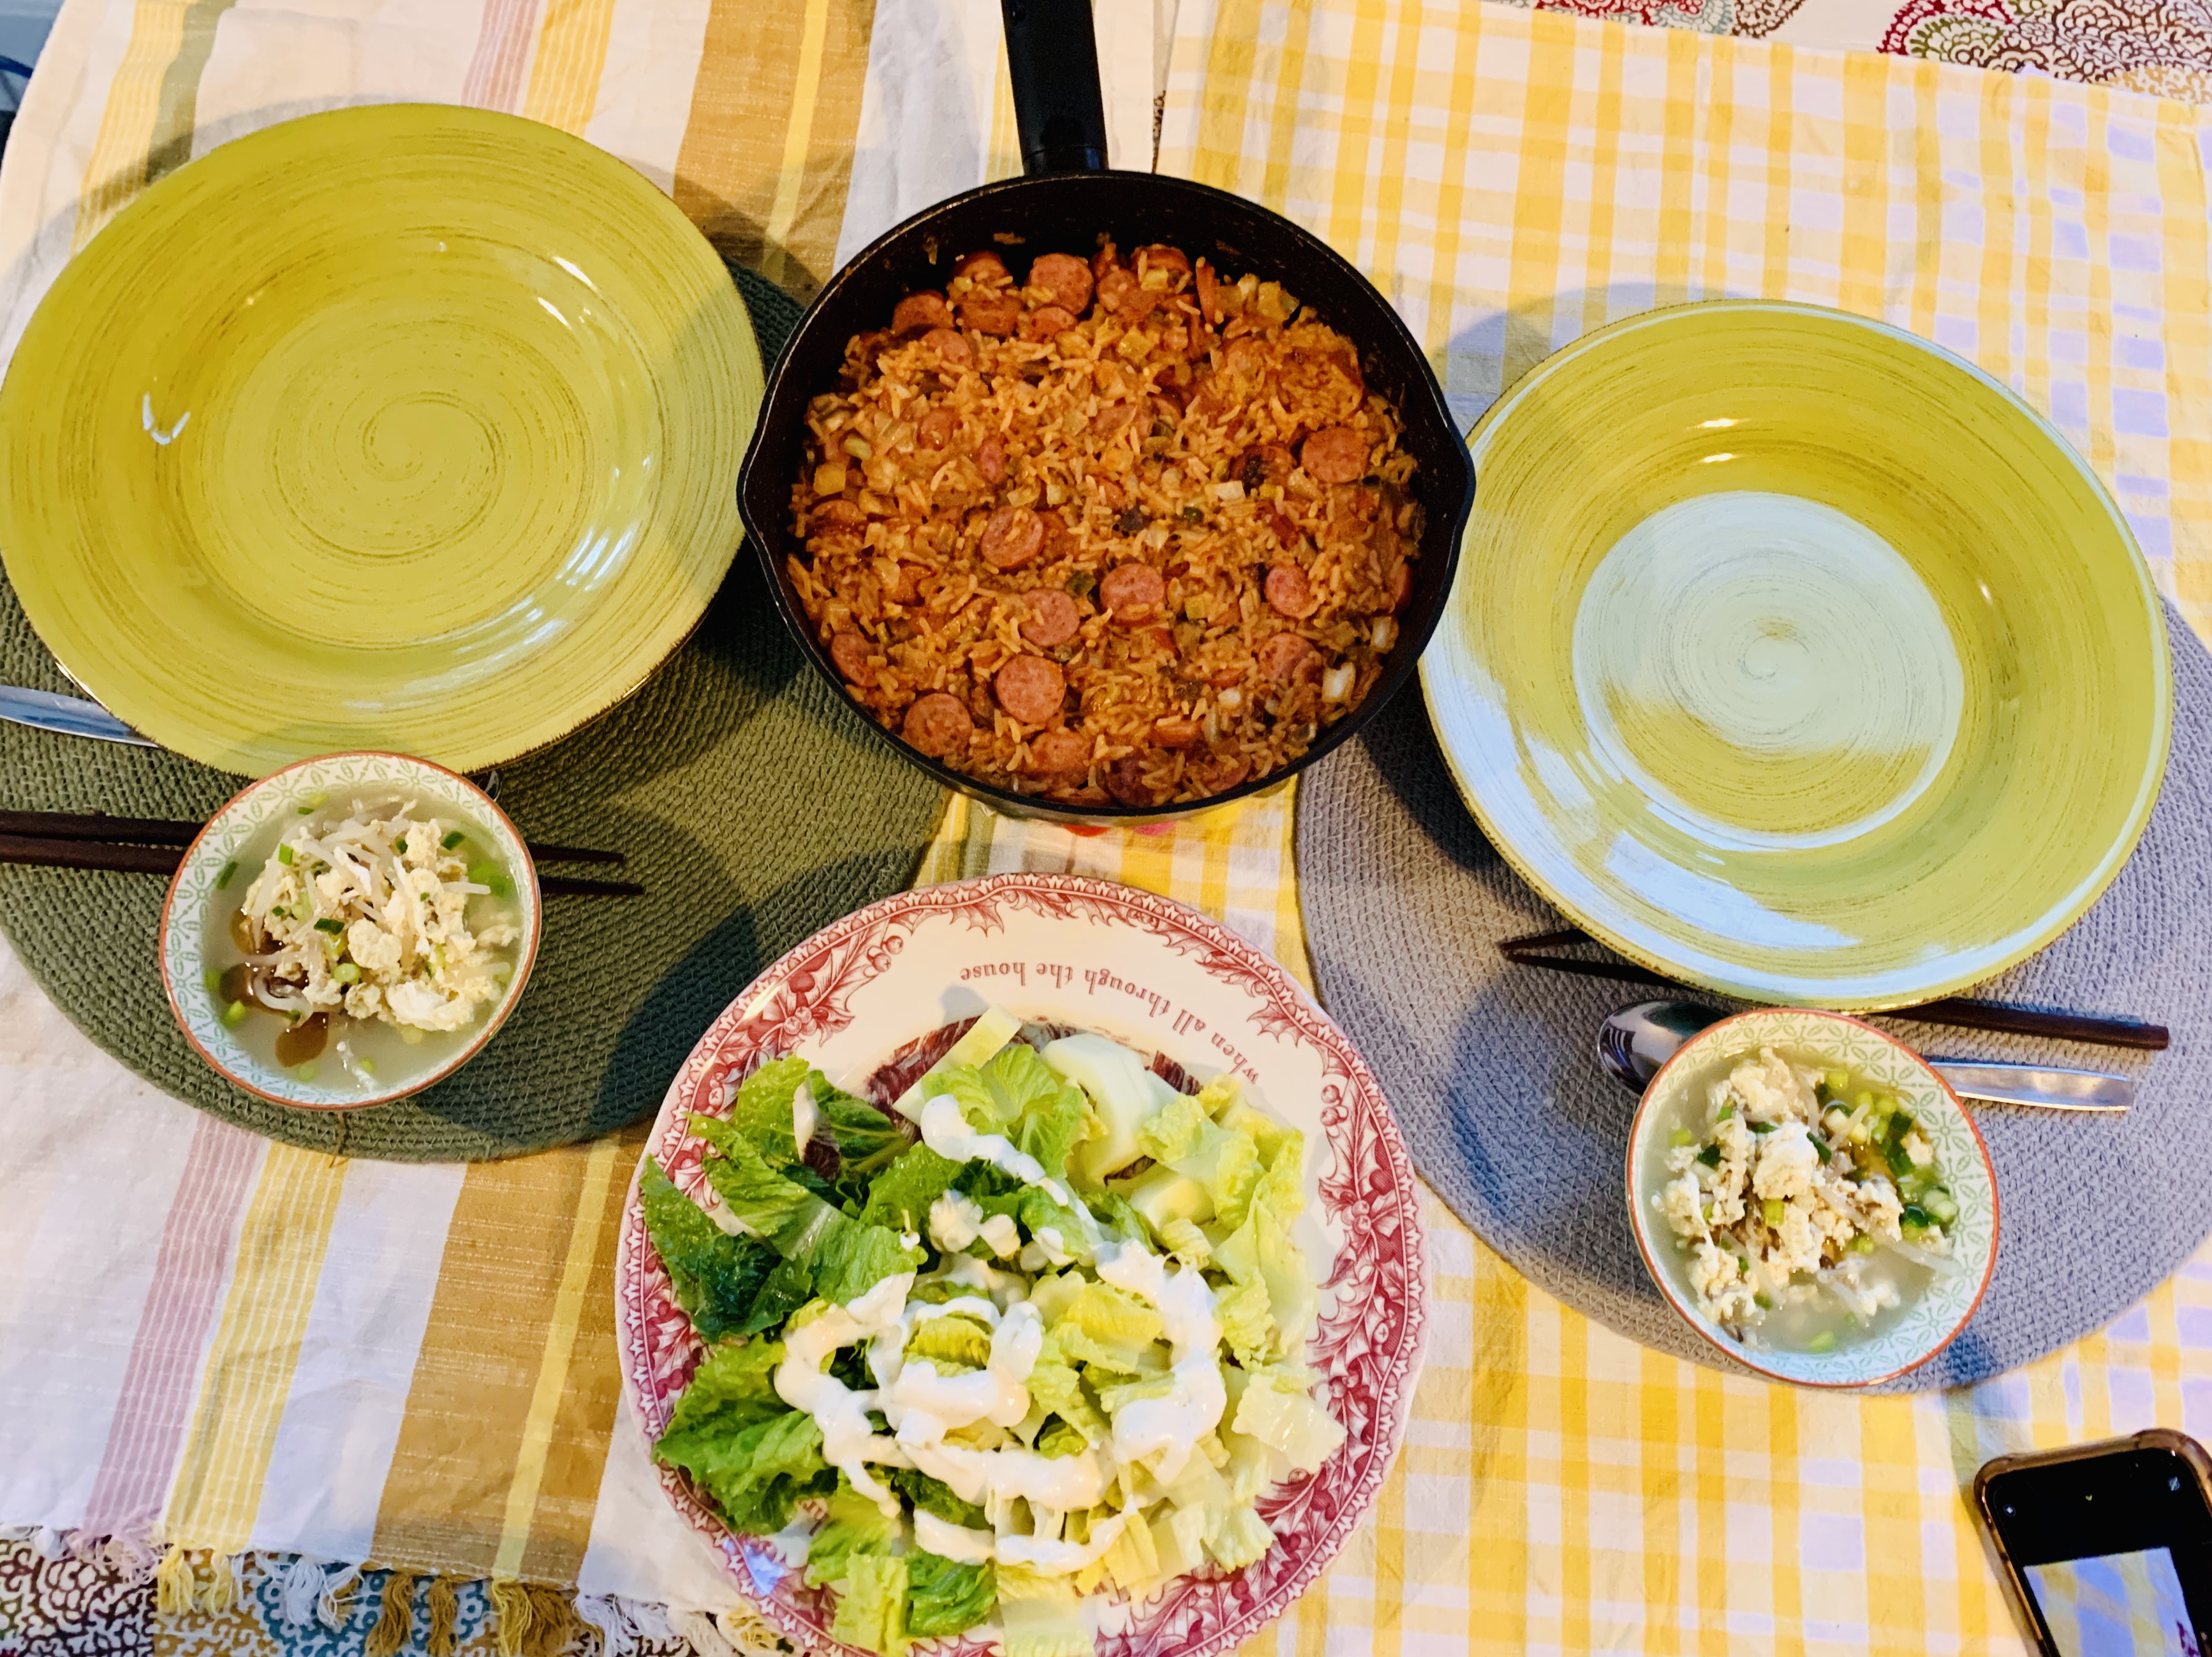 접시-볶음밥팬-계란국-샐러드-식탁위-놓인-모습